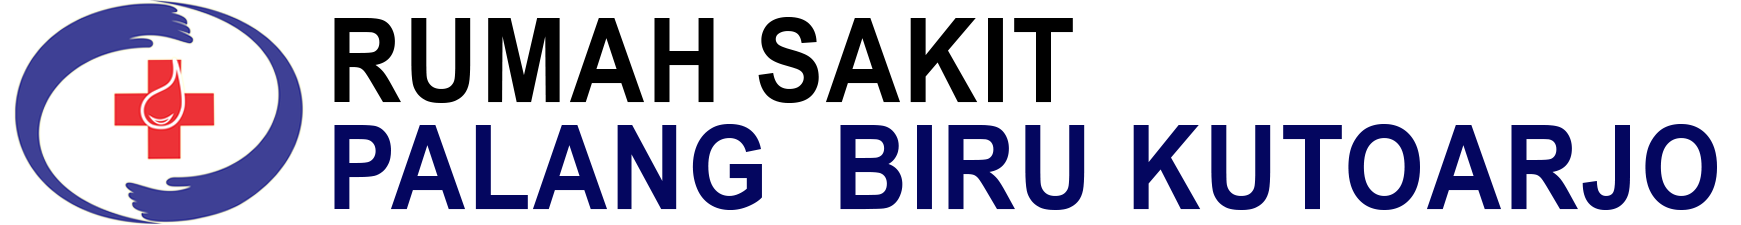 logo rspbk